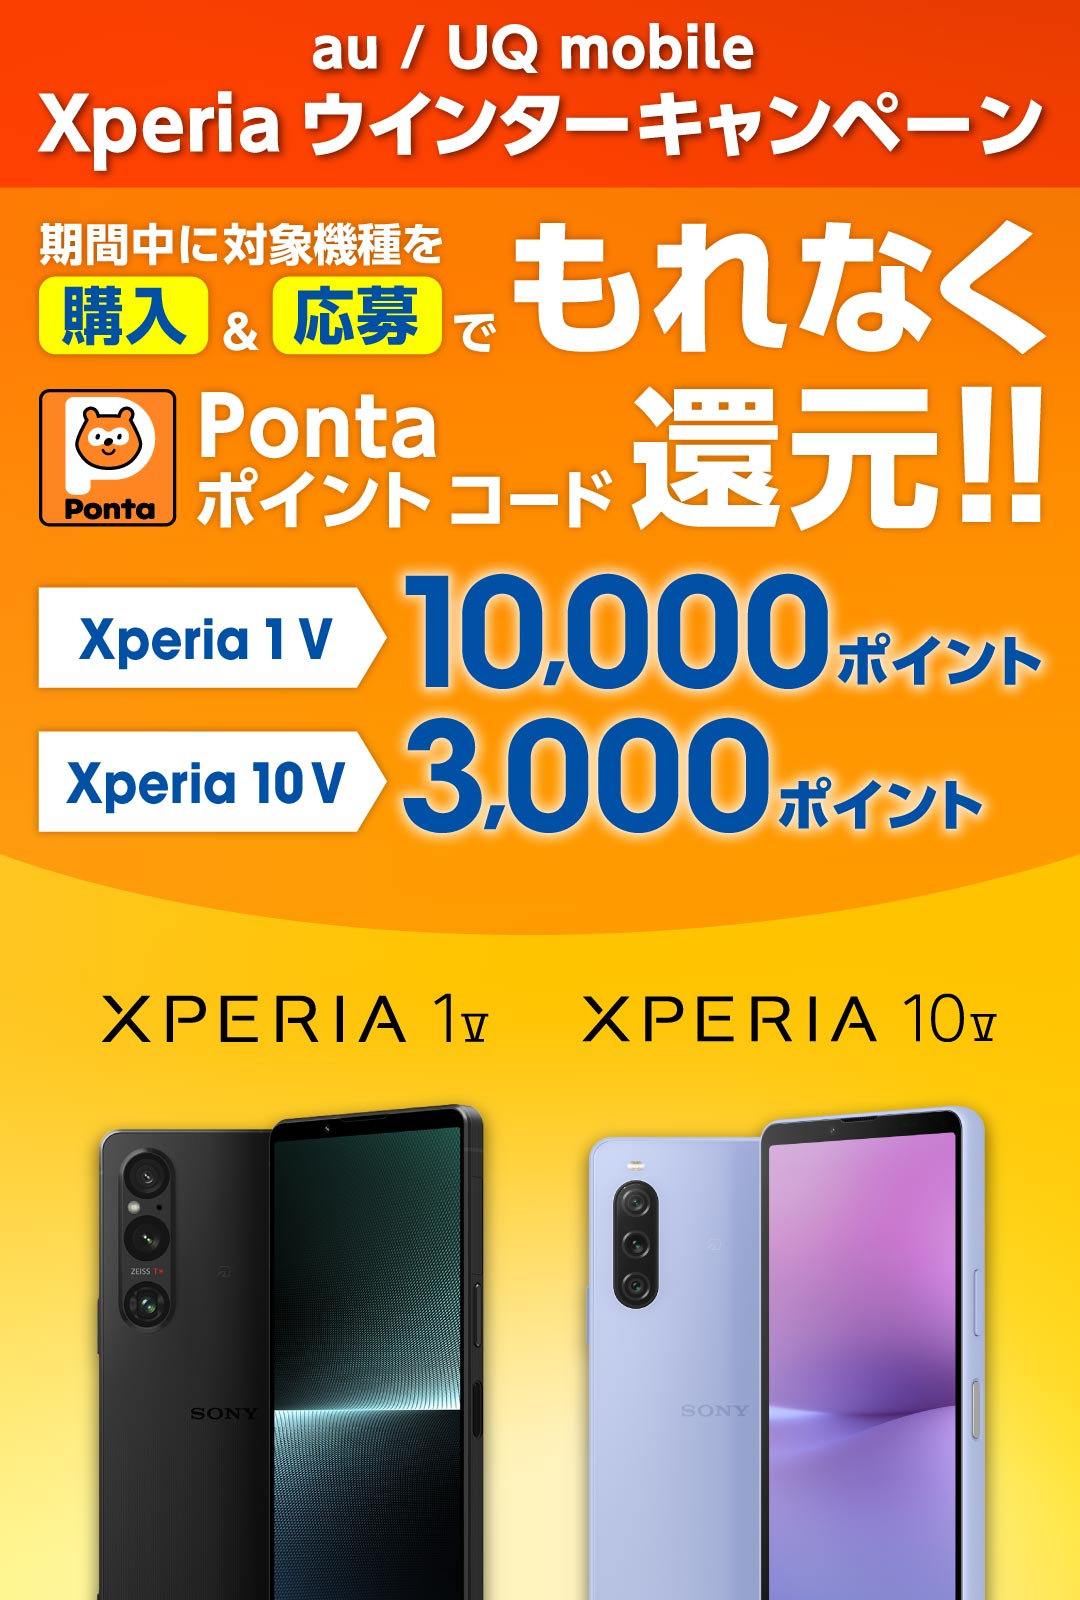 au / UQ mobile​ Xperia ウインターキャンペーン 期間中に対象機種を購入＆応募でもれなく Pontaポイント コード 還元！ Xperia 1 V 10,000ポイント Xperia 10 V 3,000ポイント